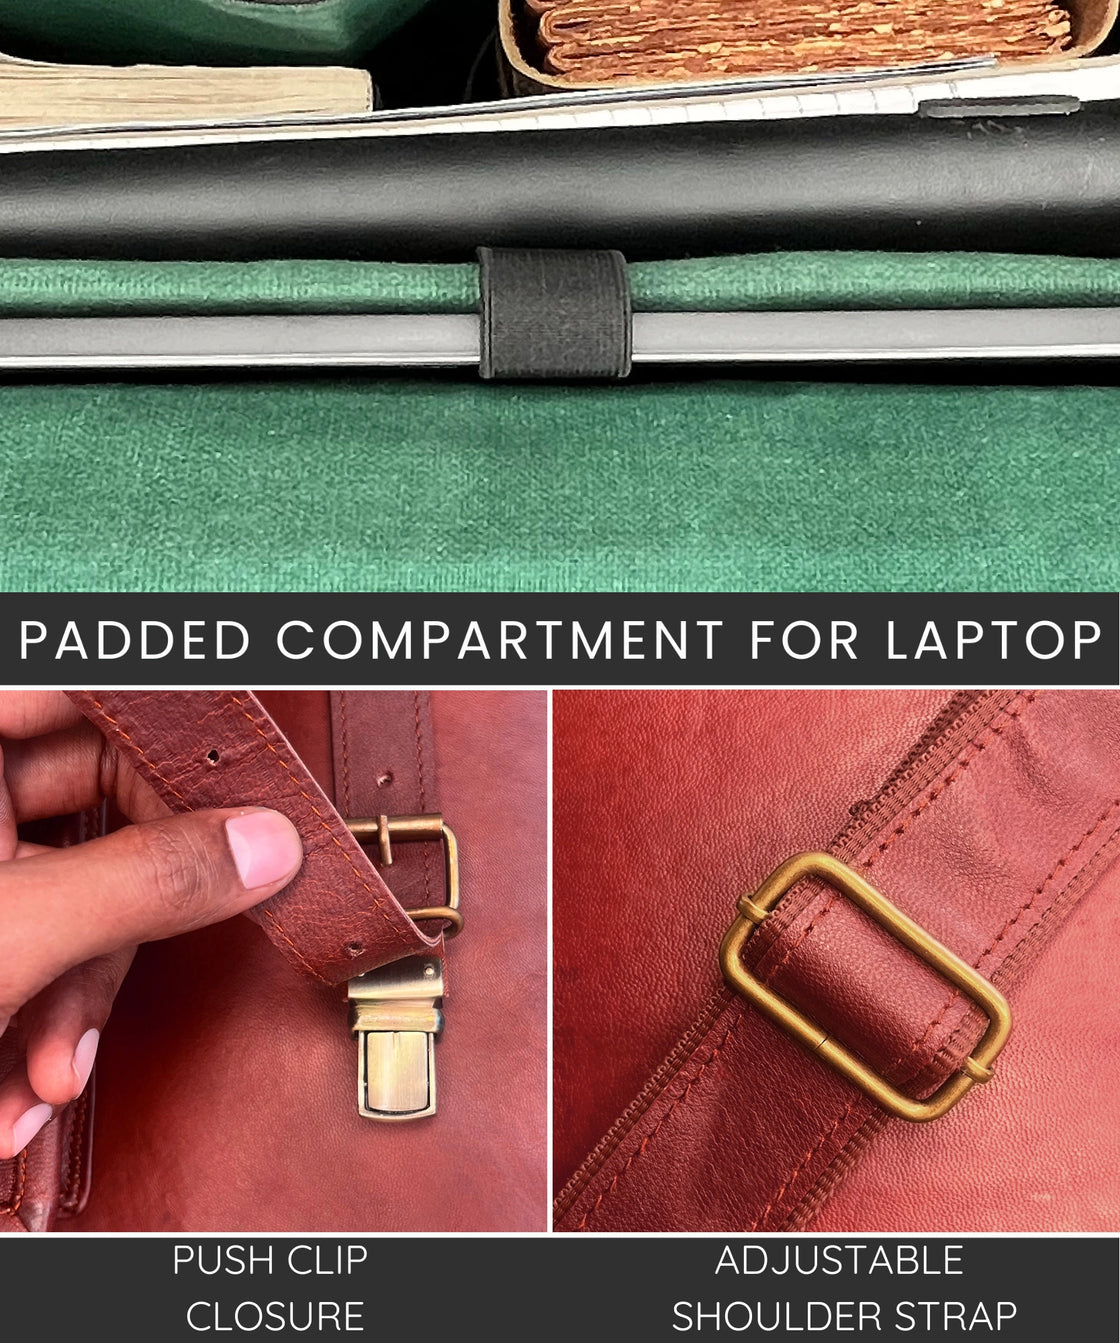 18" Leather Satchel Laptop Messenger Bag